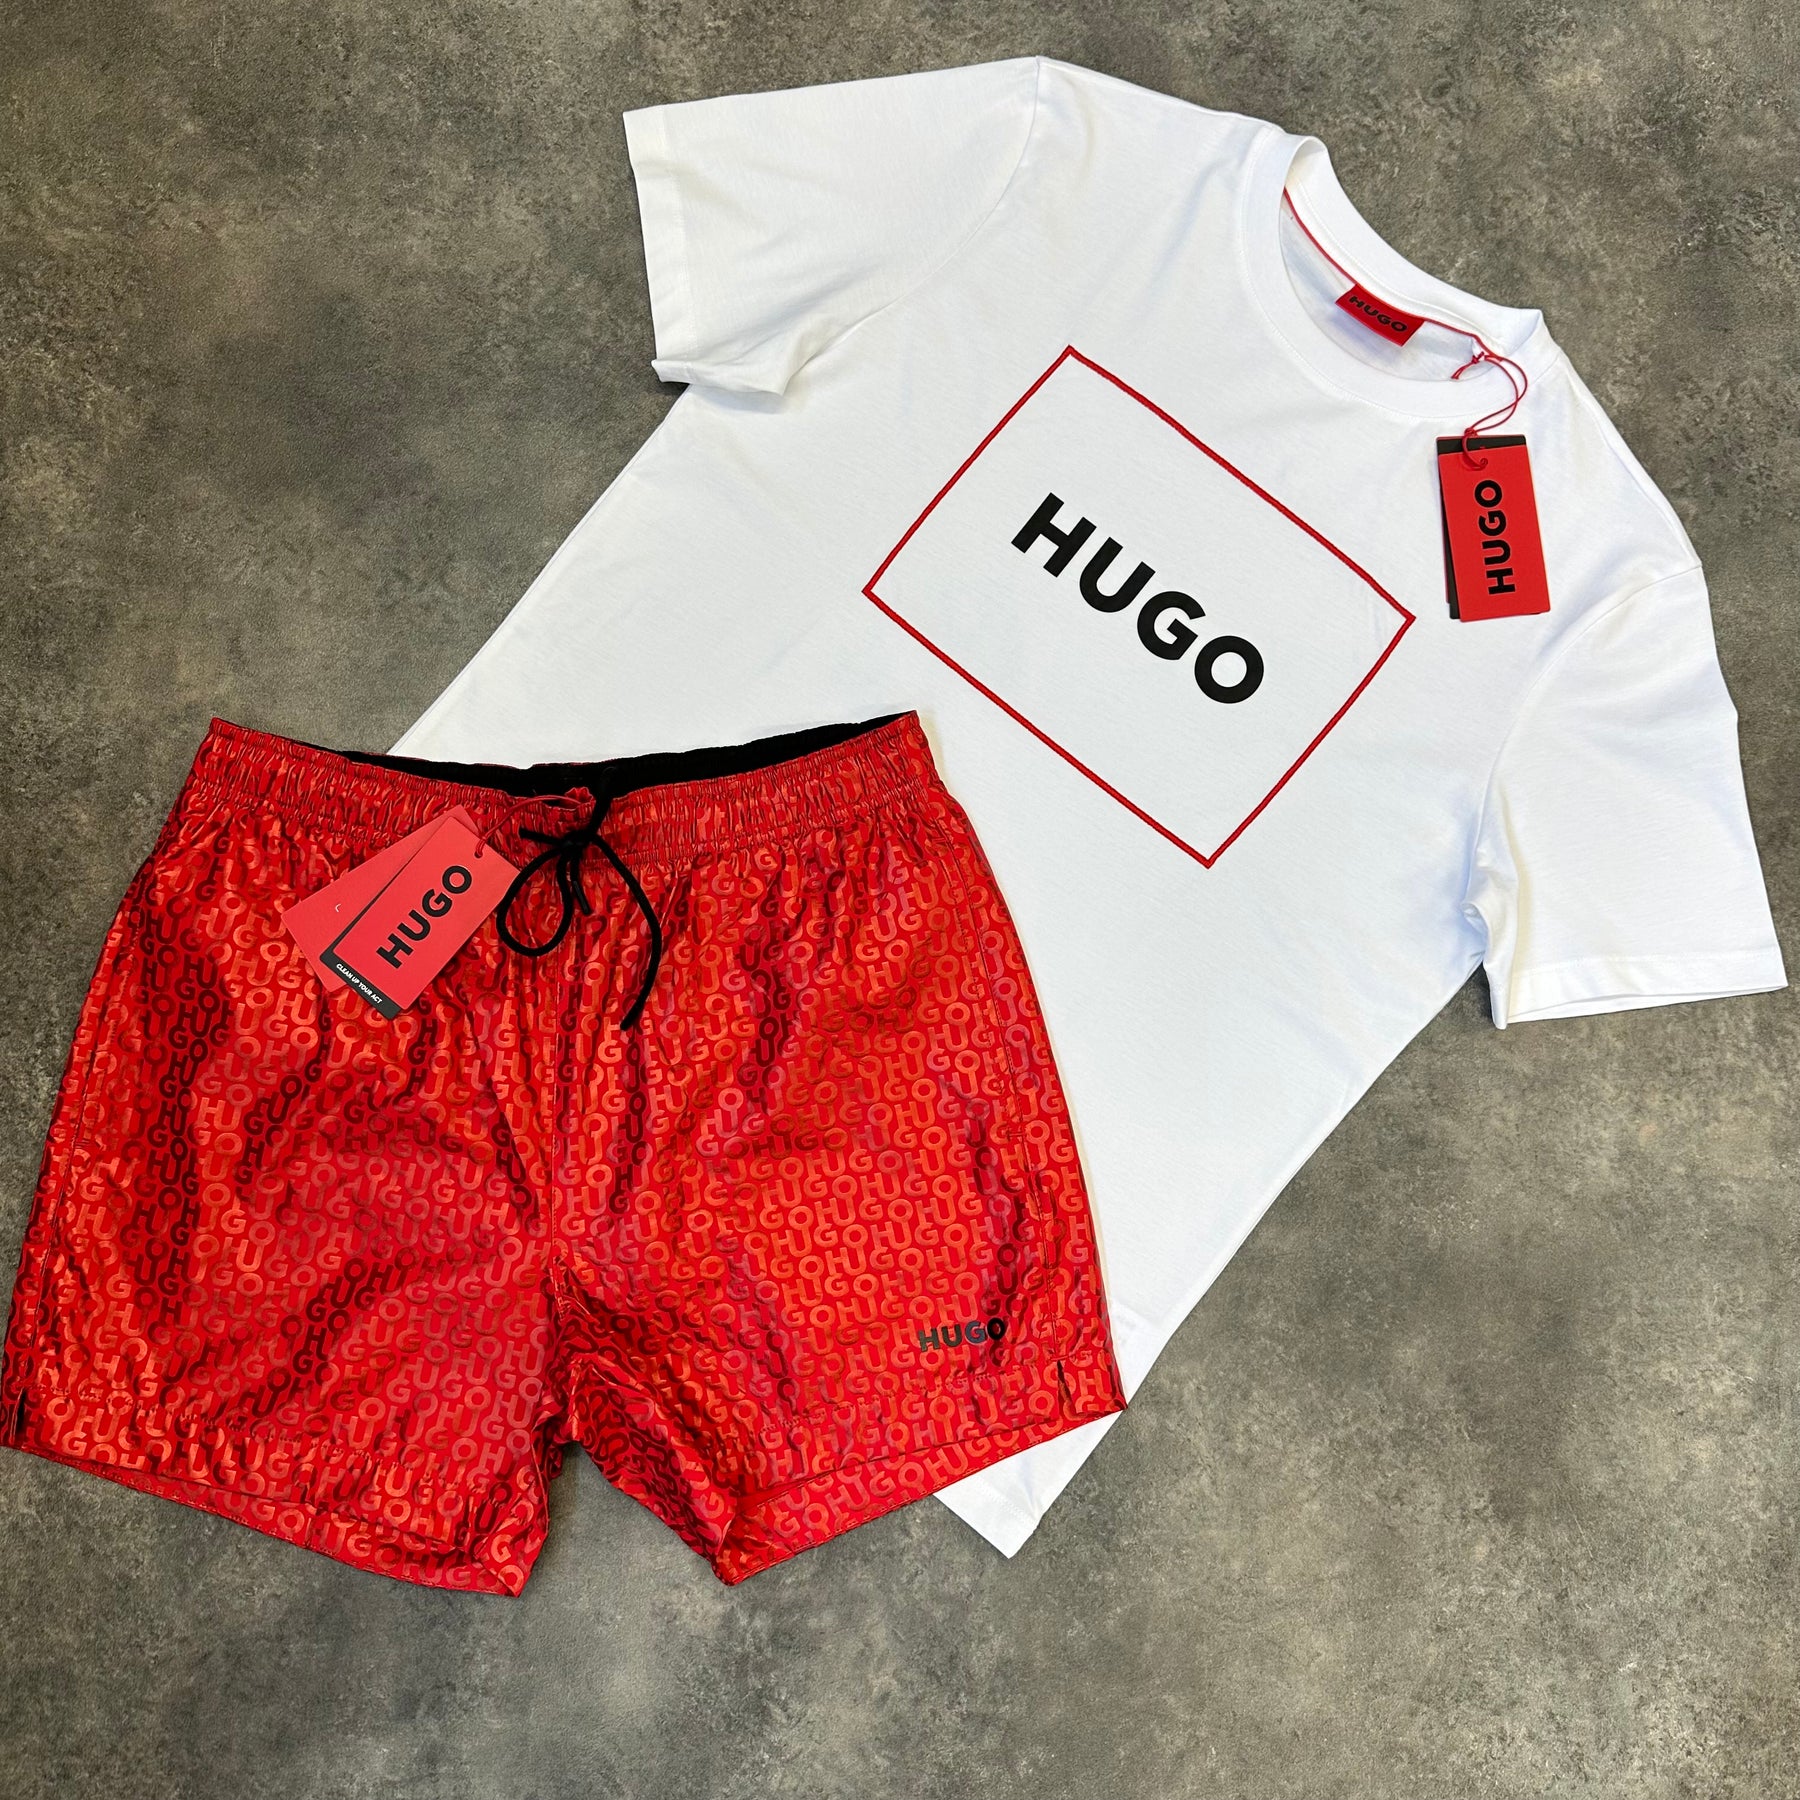 HUGO BOSS HUGO EMBROIDERED LOGO T-SHIRT & ALL OVER LOGO SWIM SHORTS SET WHITE & RED